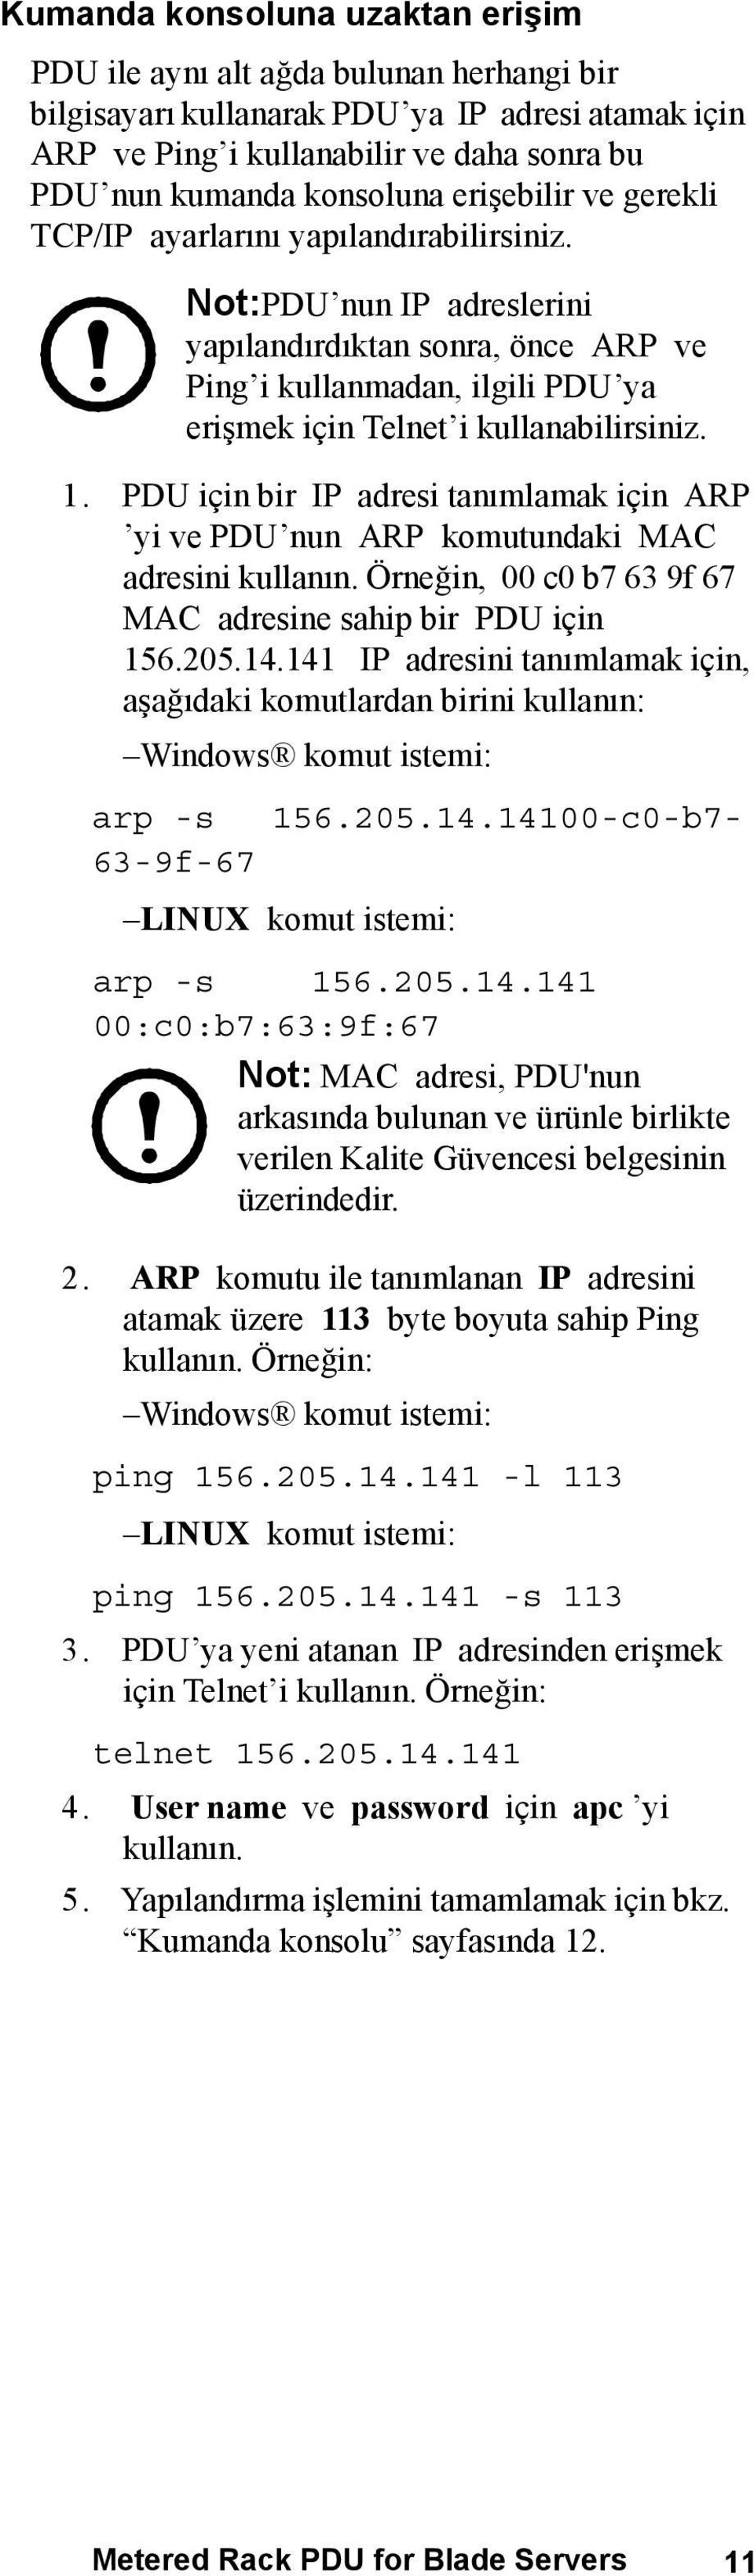 1. PDU için bir IP adresi tanımlamak için ARP yi ve PDU nun ARP komutundaki MAC adresini kullanın. Örneğin, 00 c0 b7 63 9f 67 MAC adresine sahip bir PDU için 156.205.14.